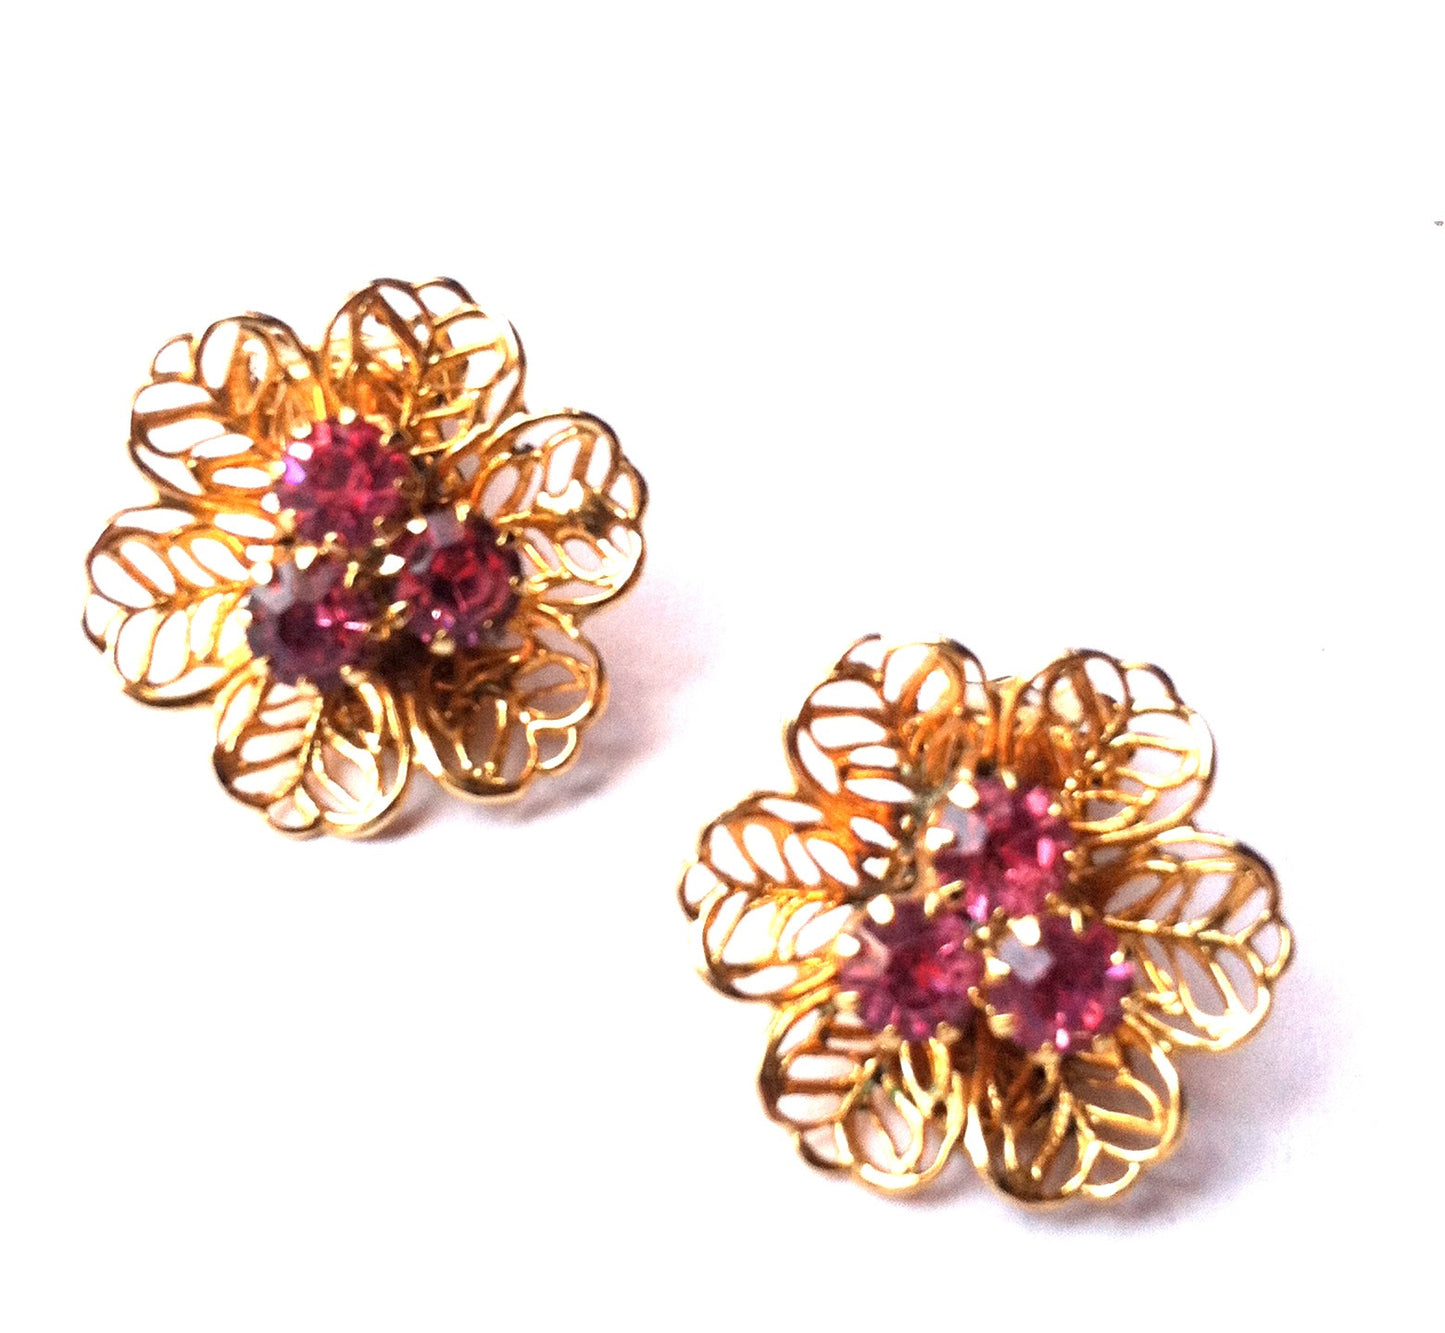 Filigree Goldtone Metal Flower Earrings w/ Pink Rhinestones circa 1960s